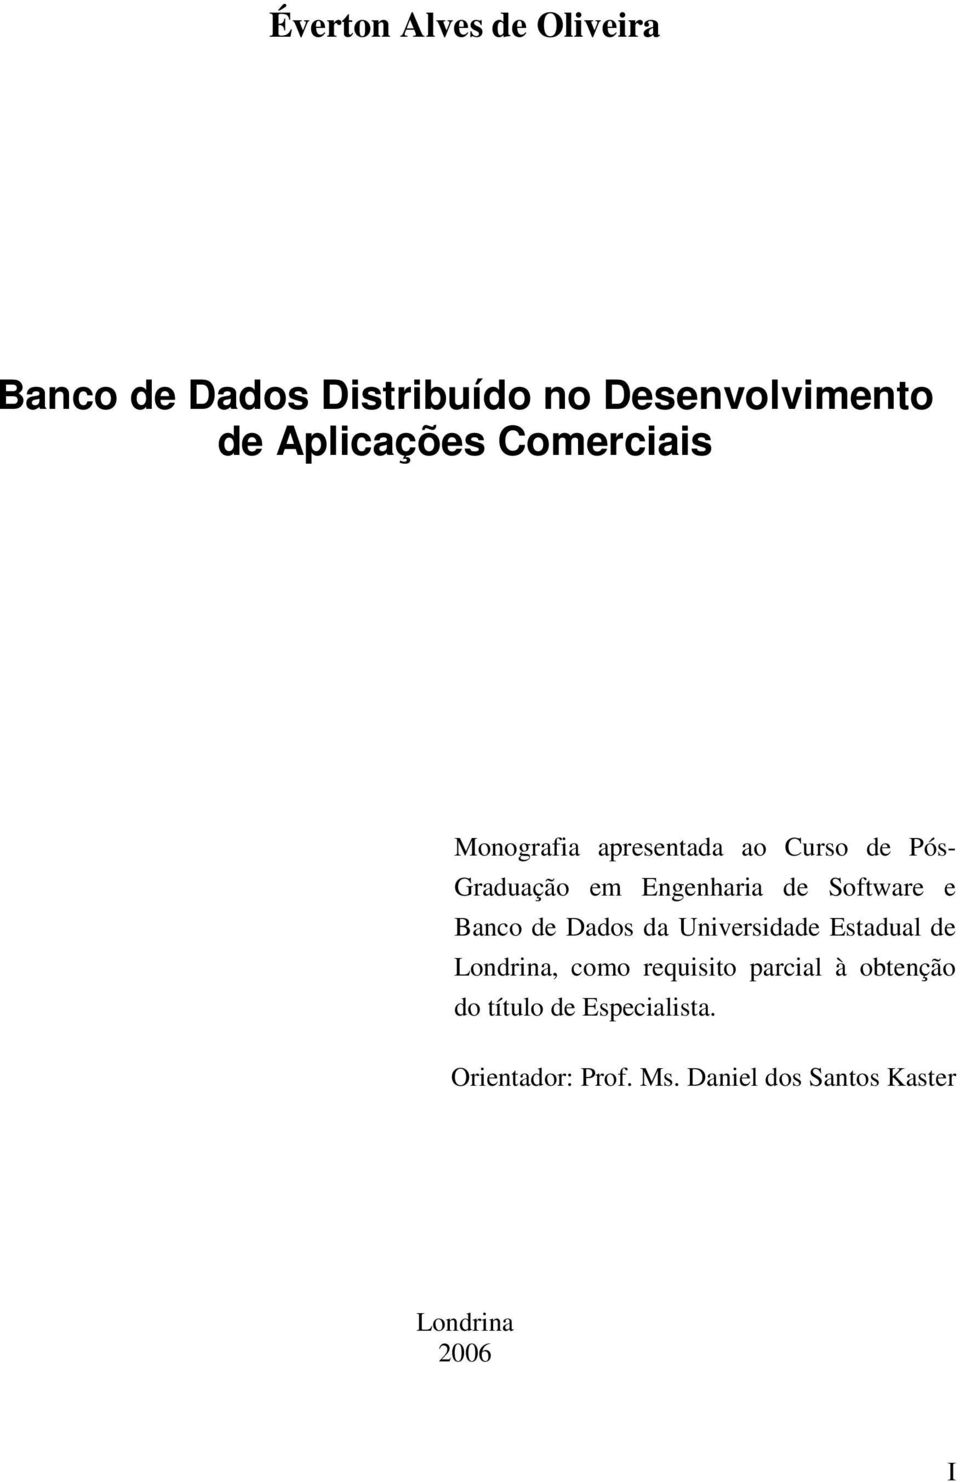 e Banco de Dados da Universidade Estadual de Londrina, como requisito parcial à